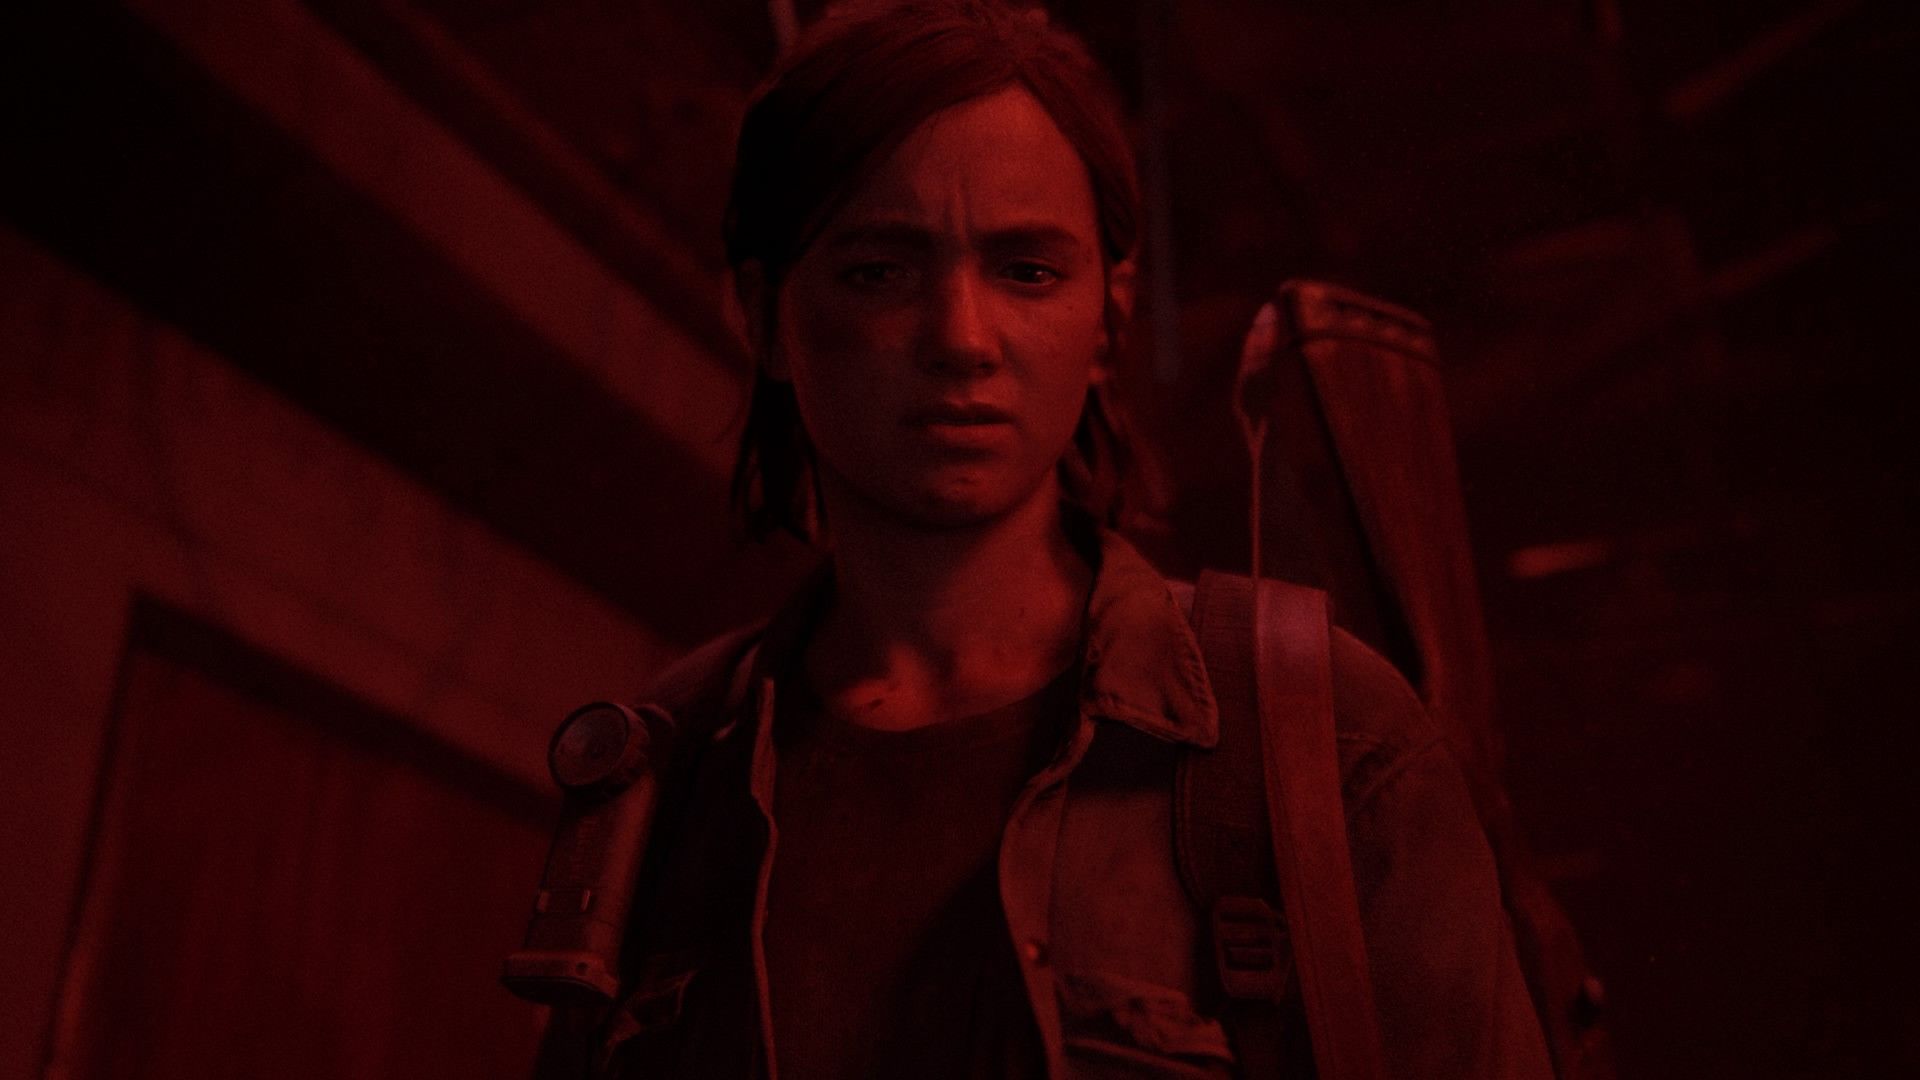 Ellie The Last of Us Part II HD Games Wallpaper